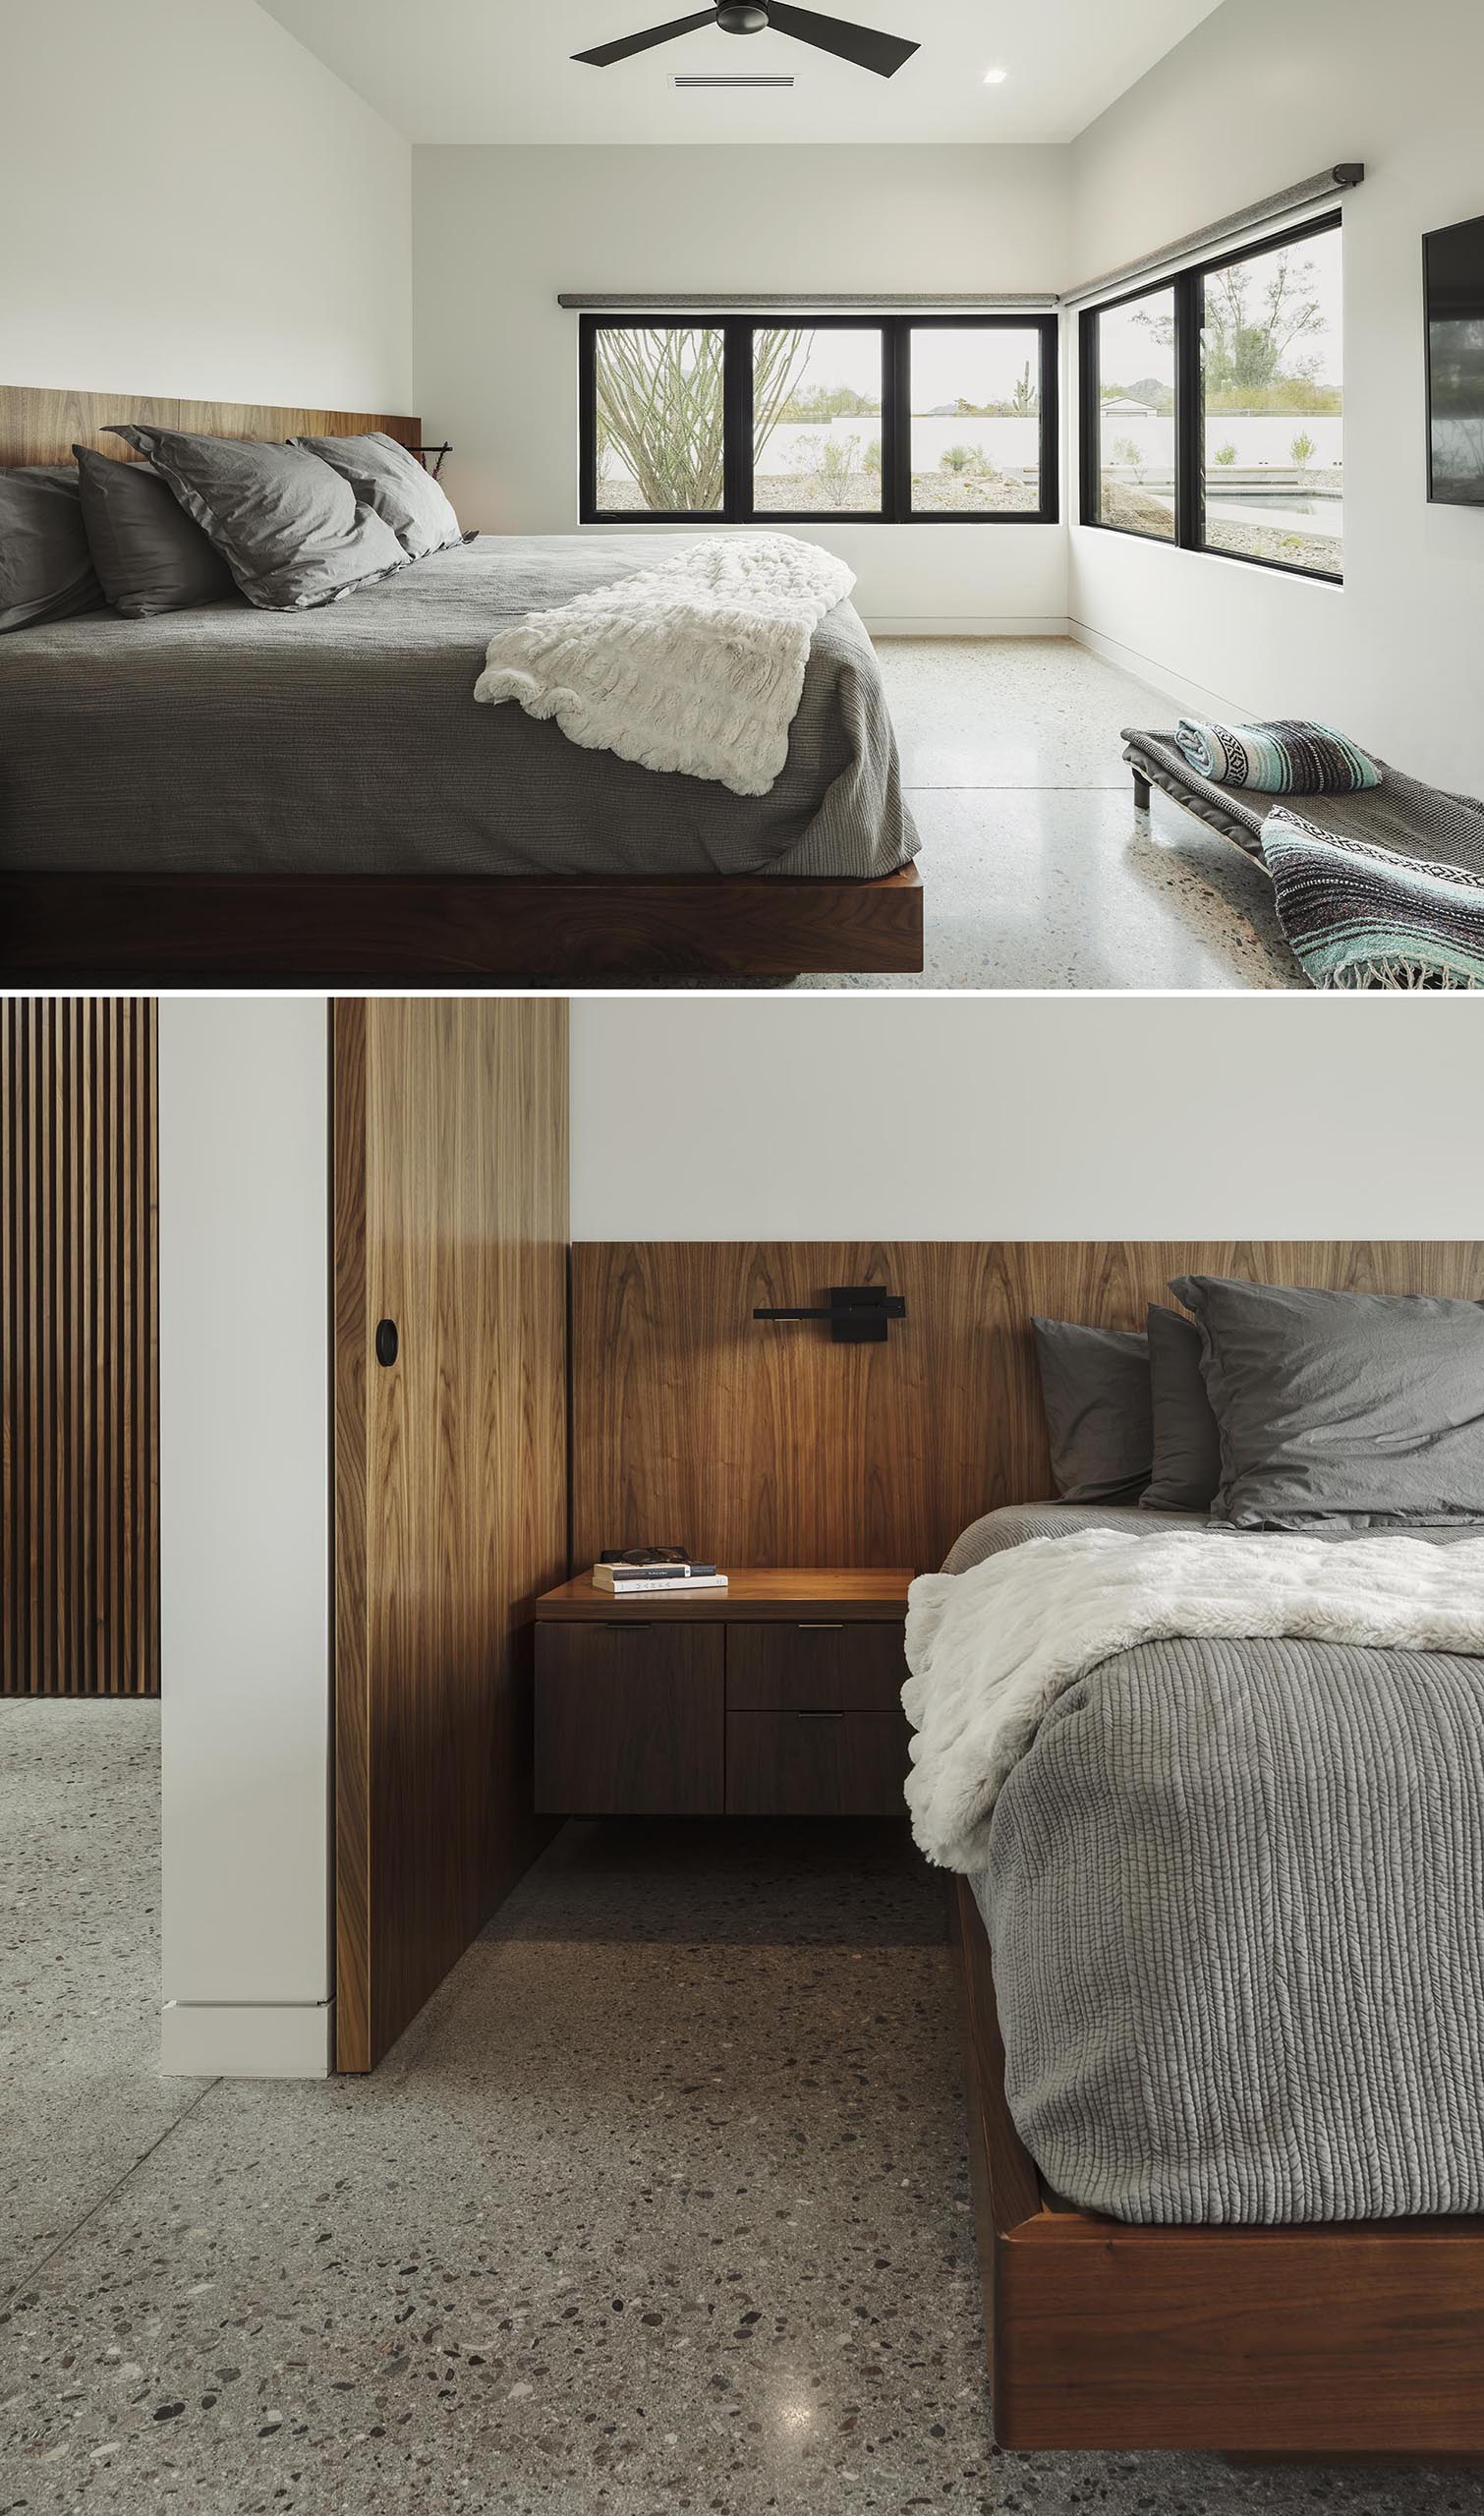 Главная спальня в минималистском стиле со встроенным деревянным каркасом кровати и изголовьем.